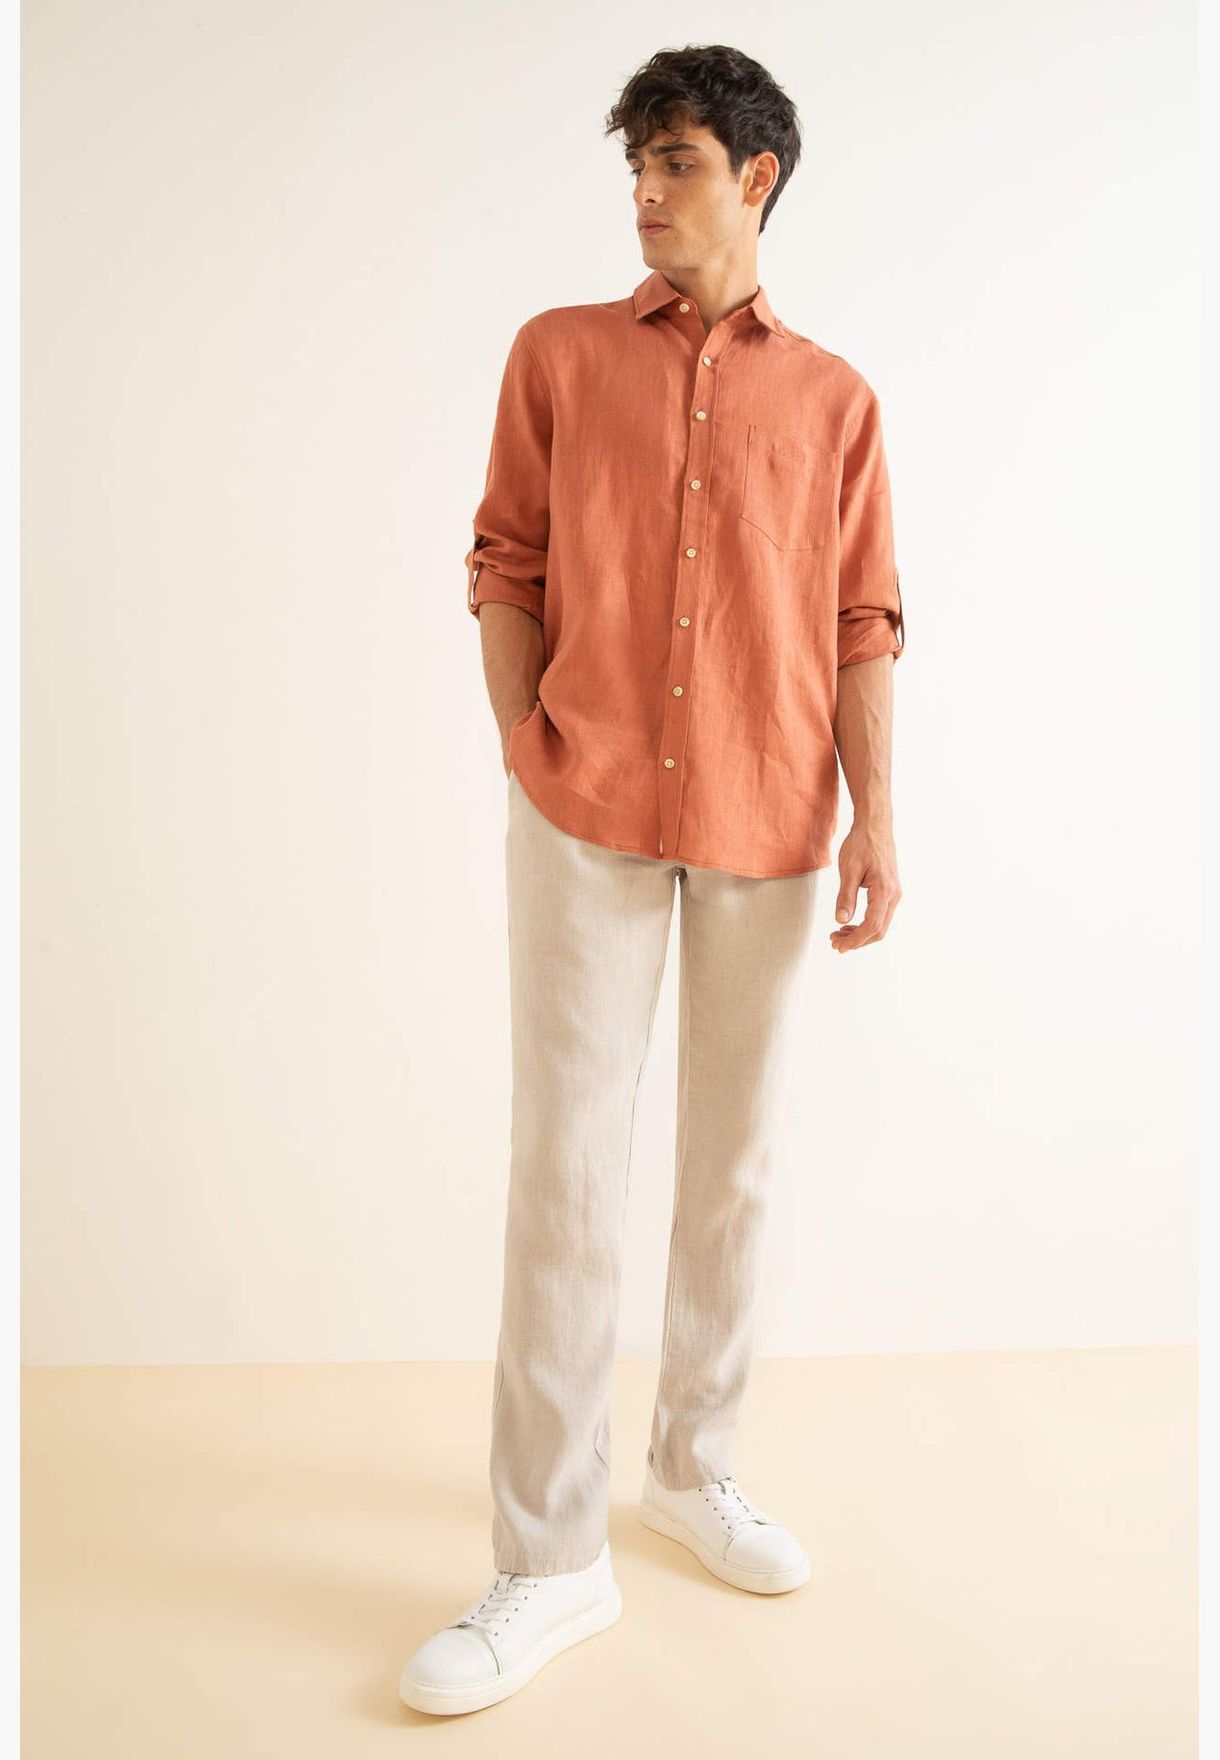 Man Regular Fit Polo Neck Woven Top Long Sleeve Shirt